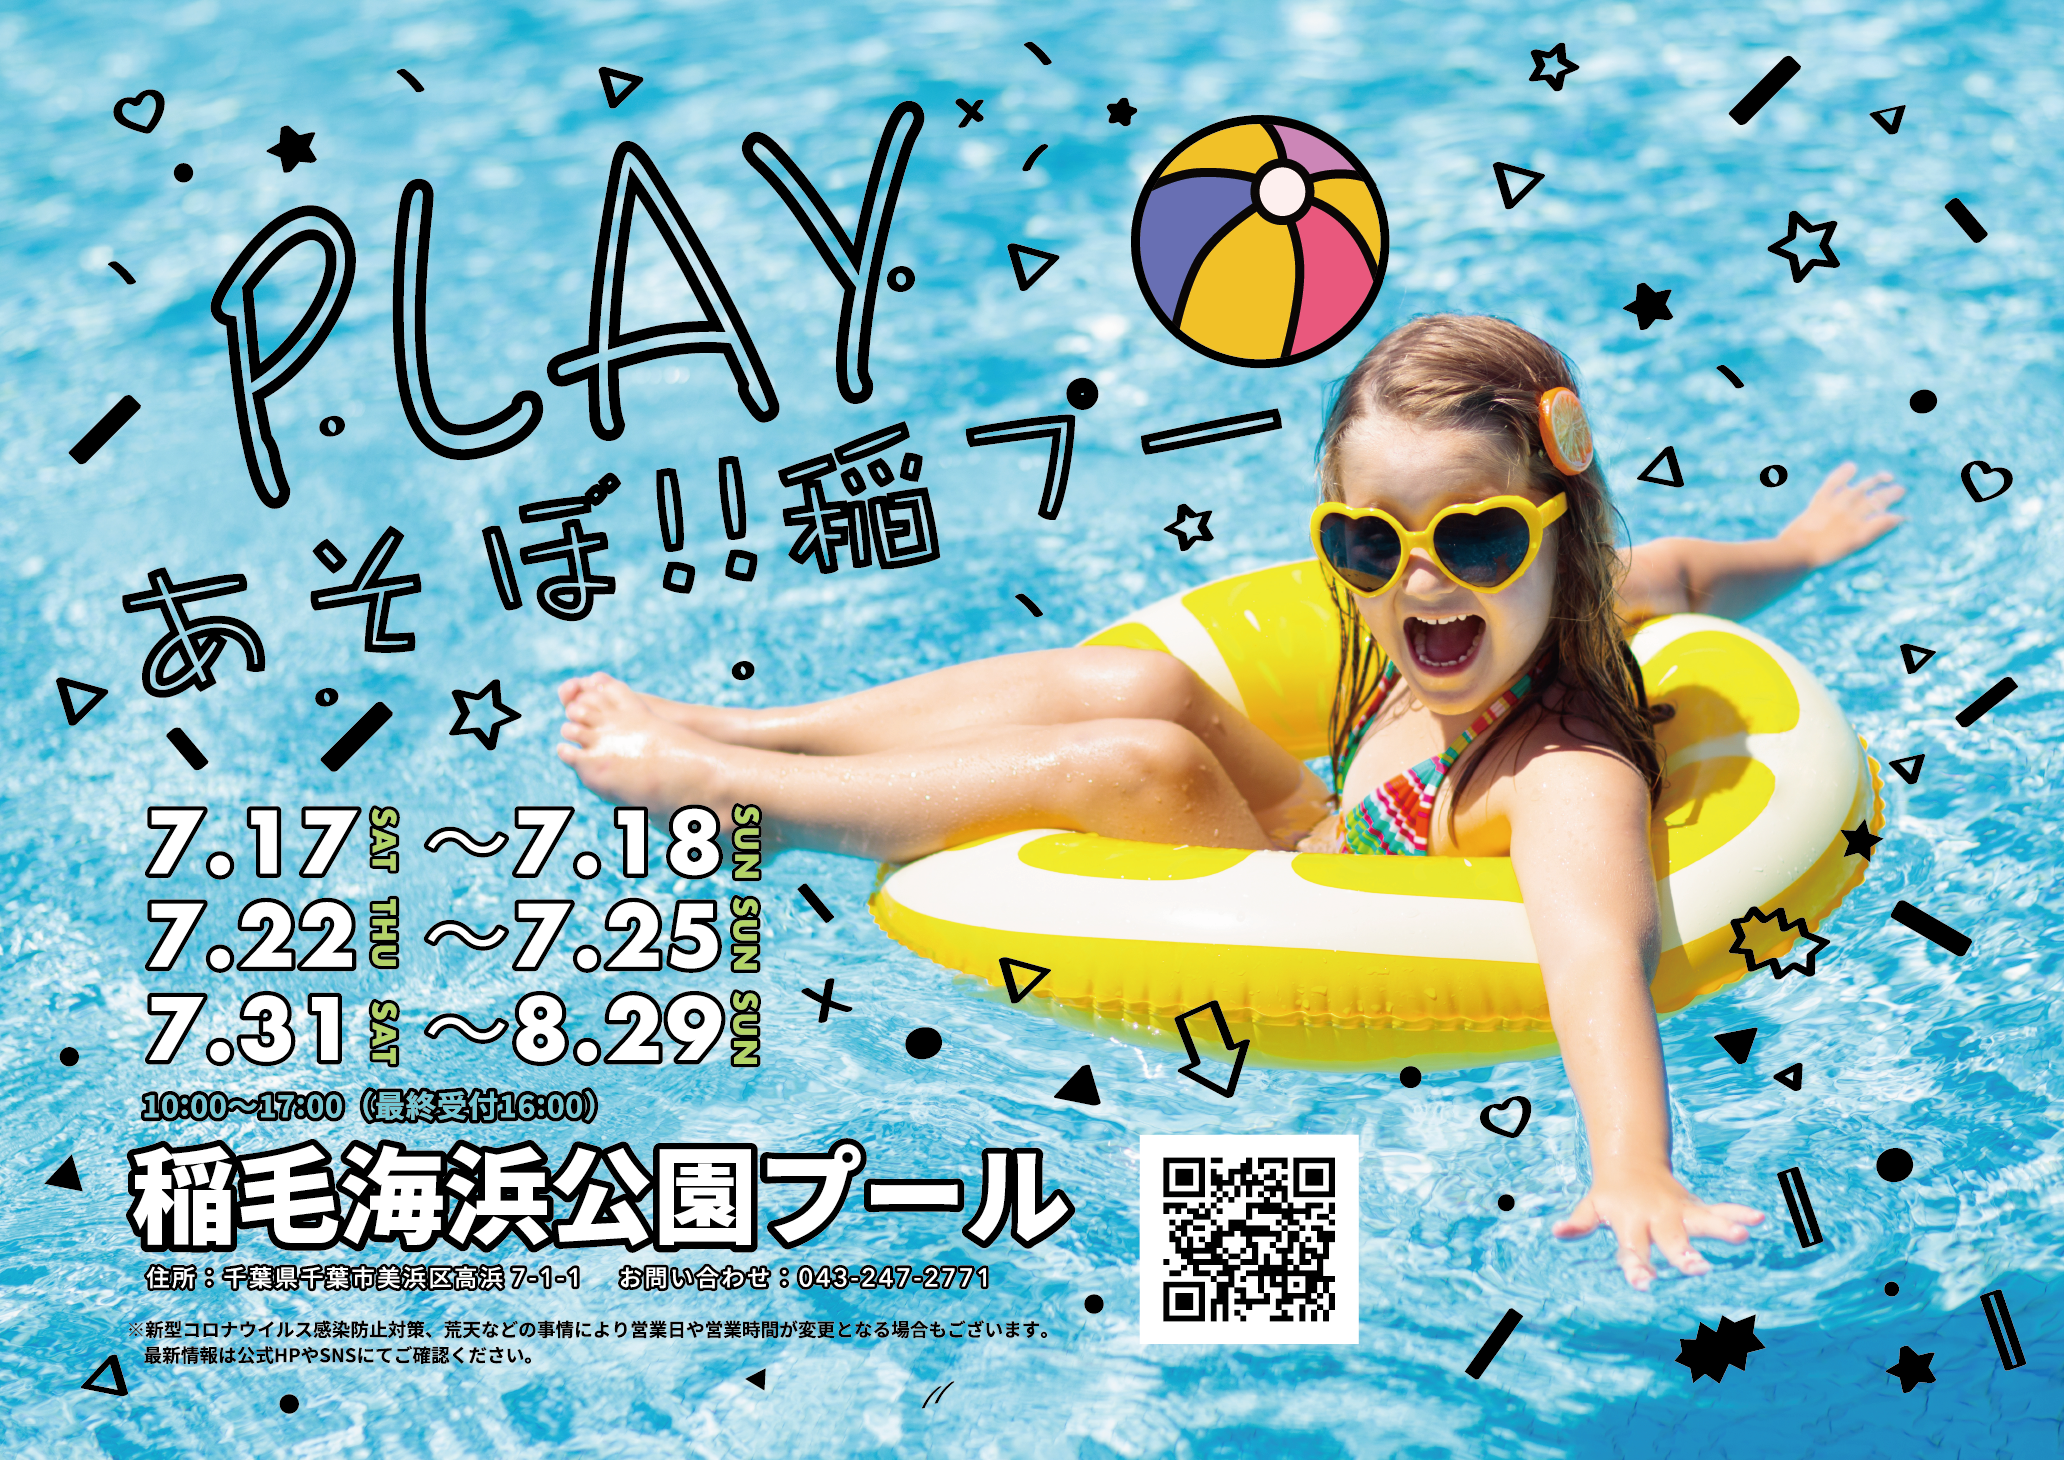 千葉市稲毛海浜公園プール 7 17 土 開園決定 今年の夏は新アトラクションやホワイトビーチを満喫できる特別な36日間 株式会社ワールドパークのプレスリリース